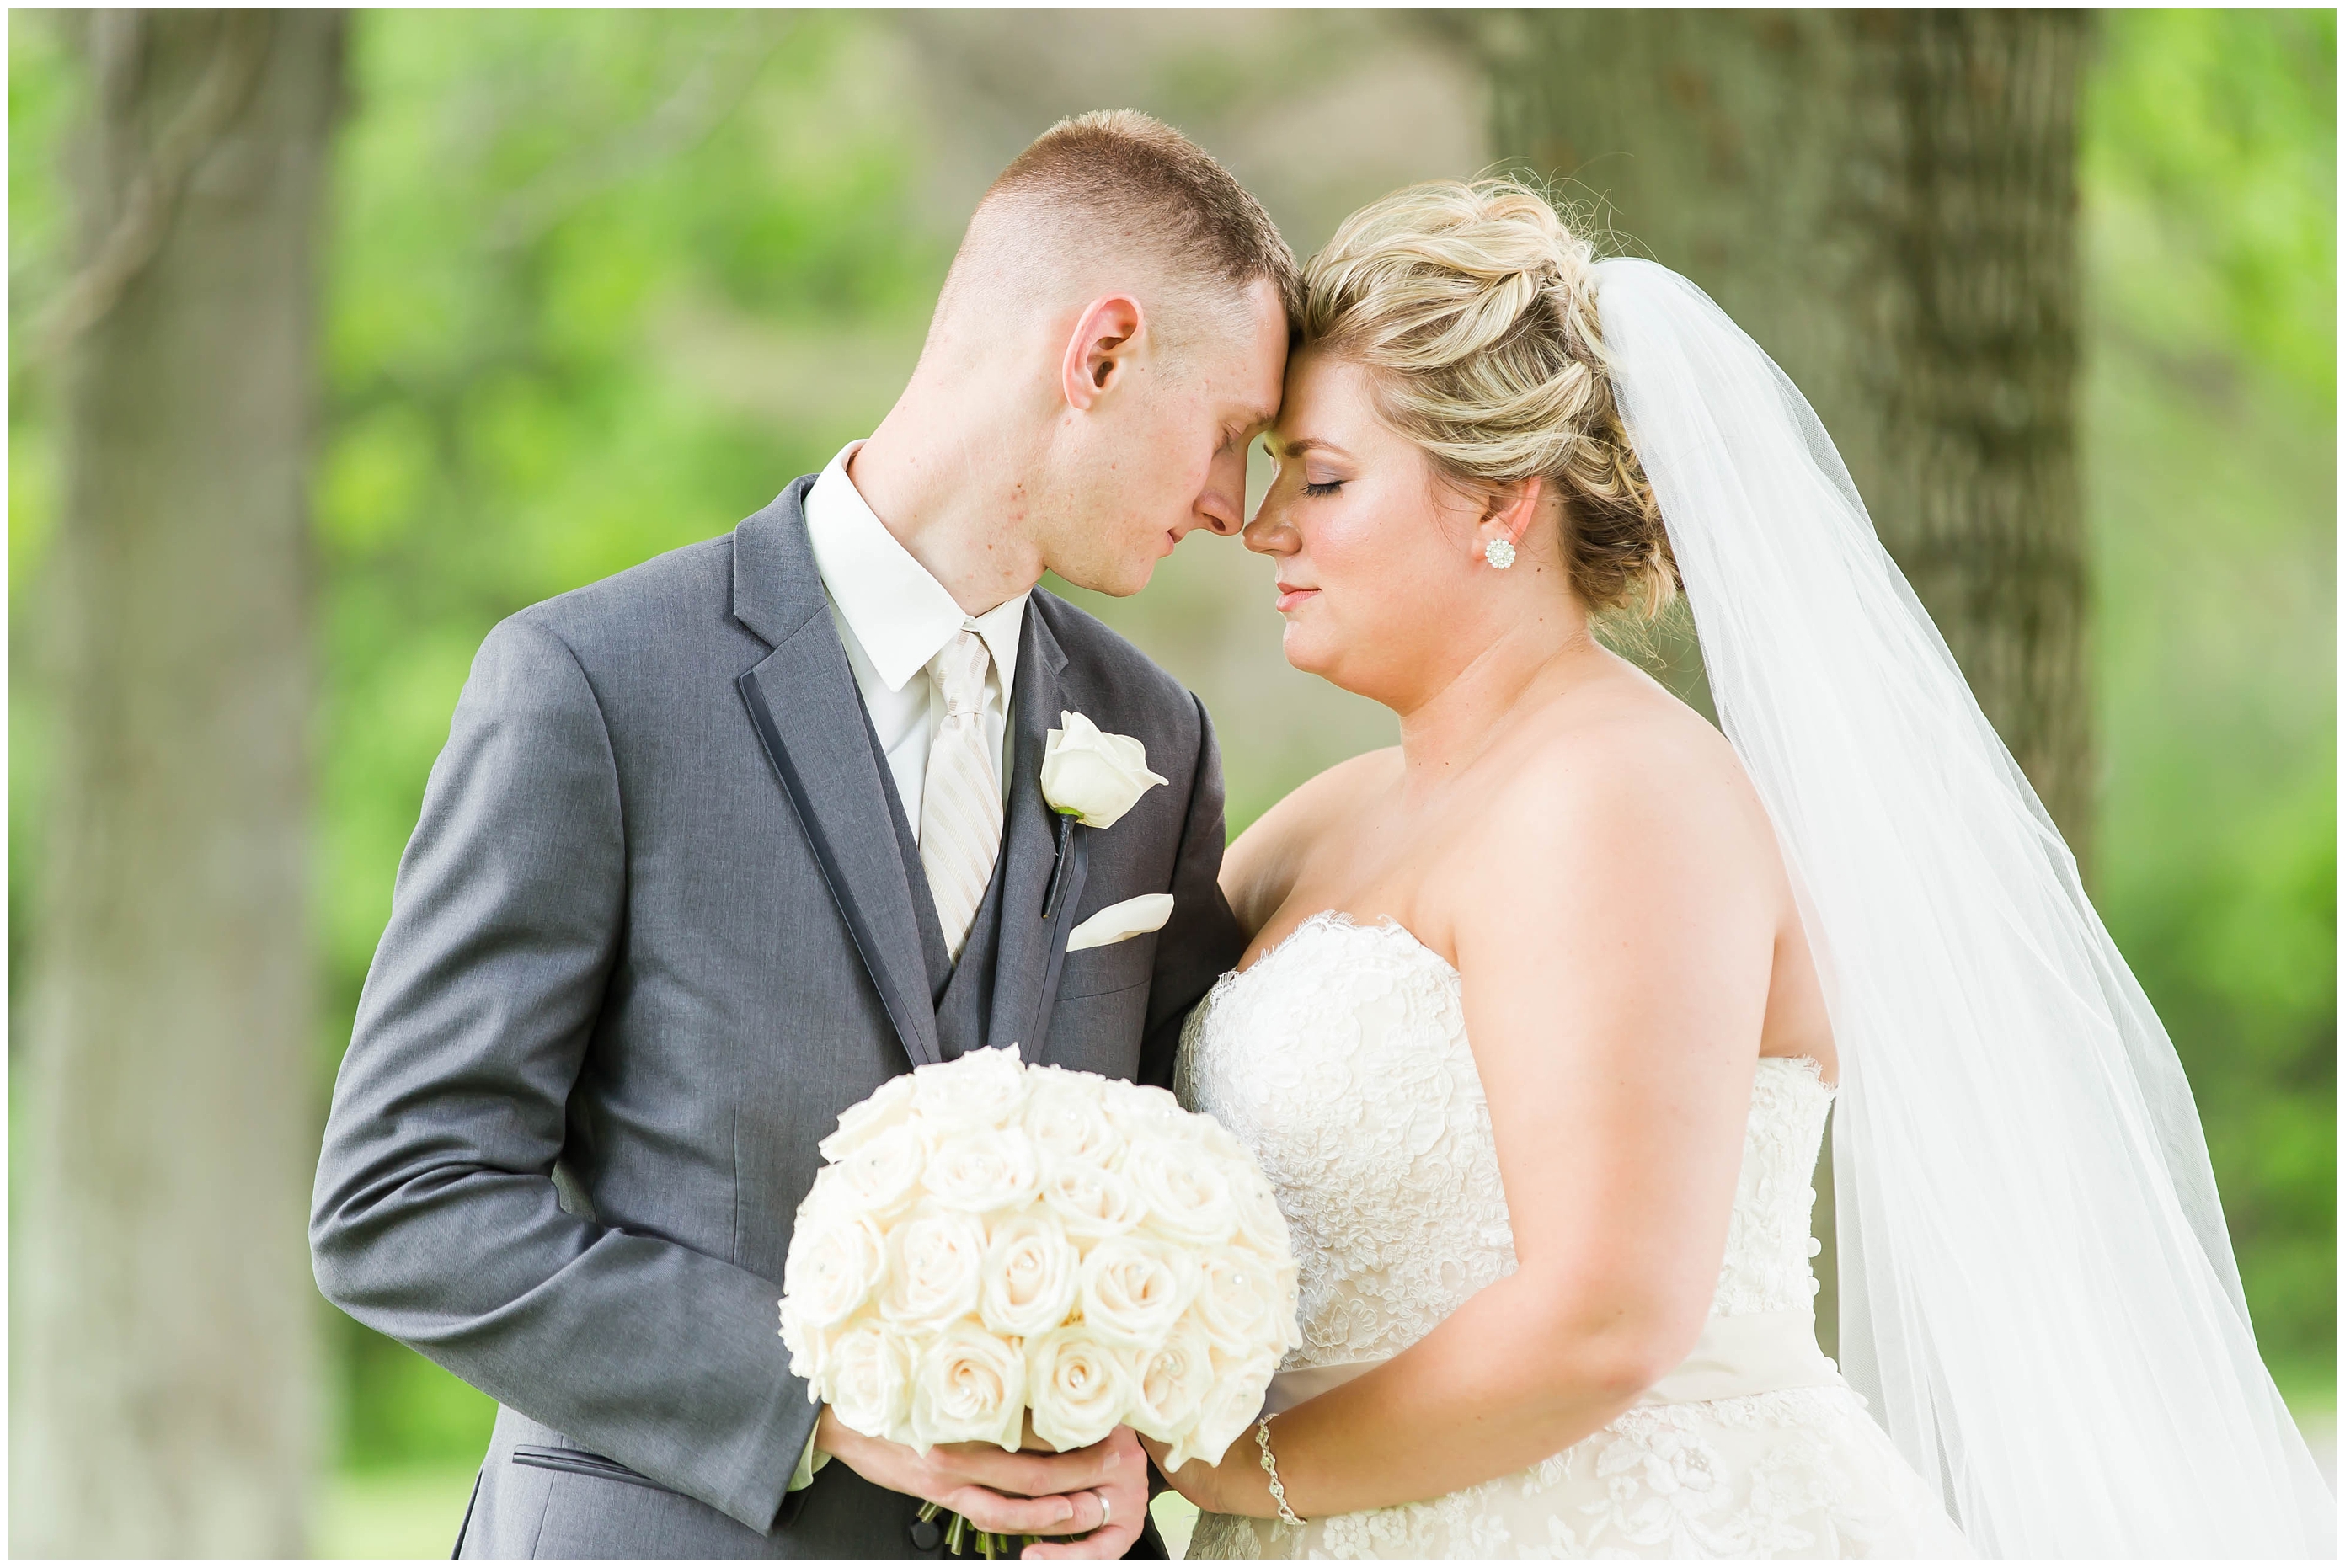 Catholic wedding,Cleveland Ohio Wedding,blush wedding gown,lace bridesmaid dresses,photographer akron ohio,rose bouquets,